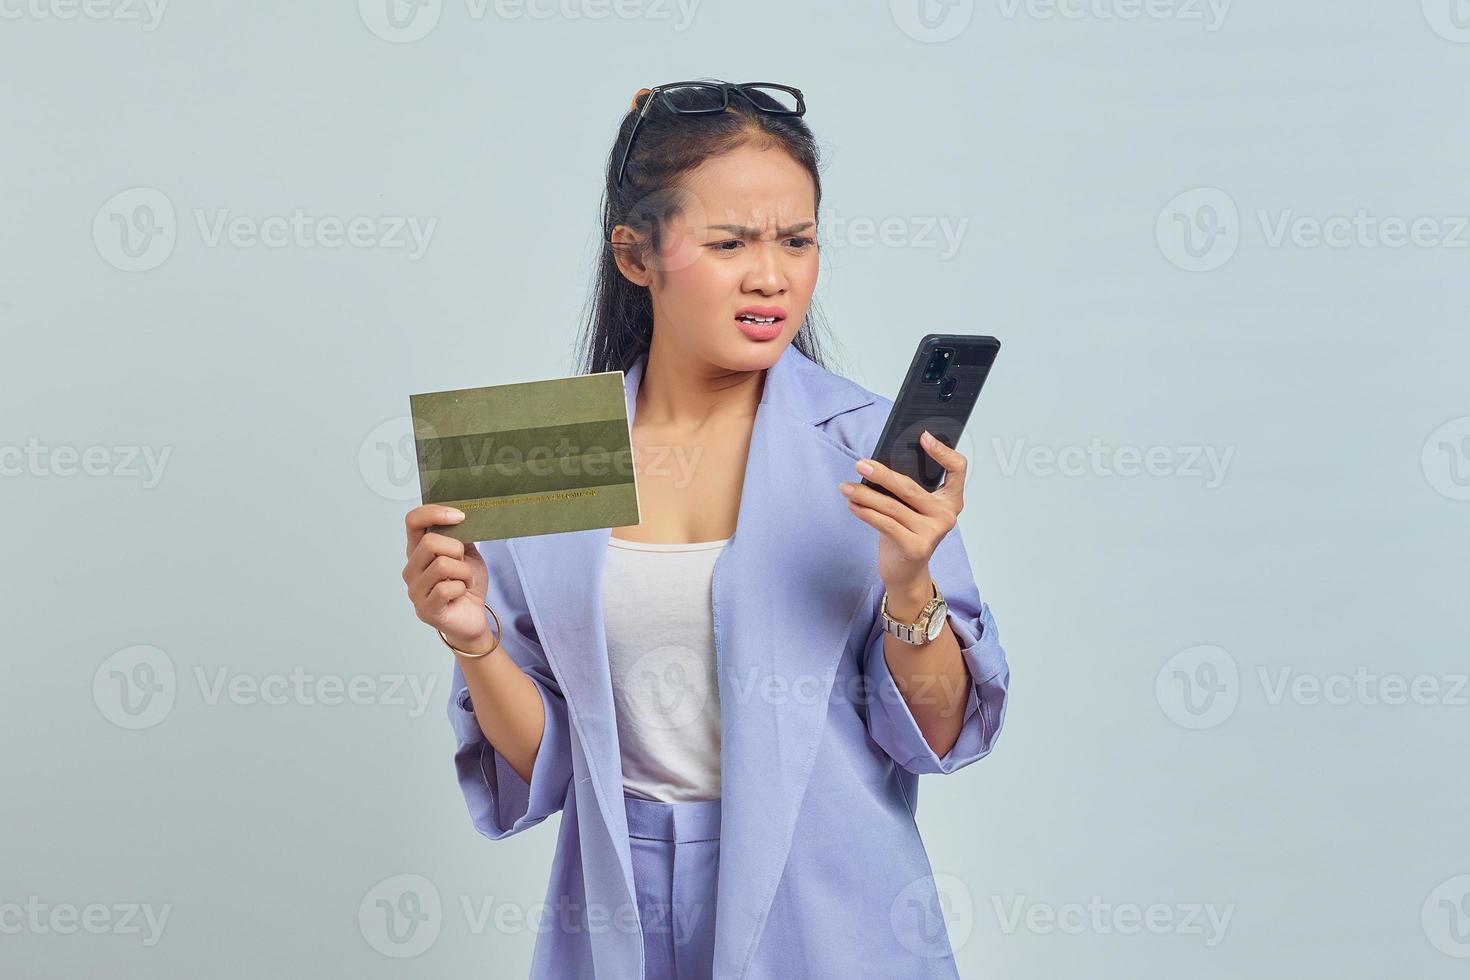 retrato de una joven asiática enojada que muestra el libro del vehículo y usa un teléfono inteligente aislado de fondo blanco foto